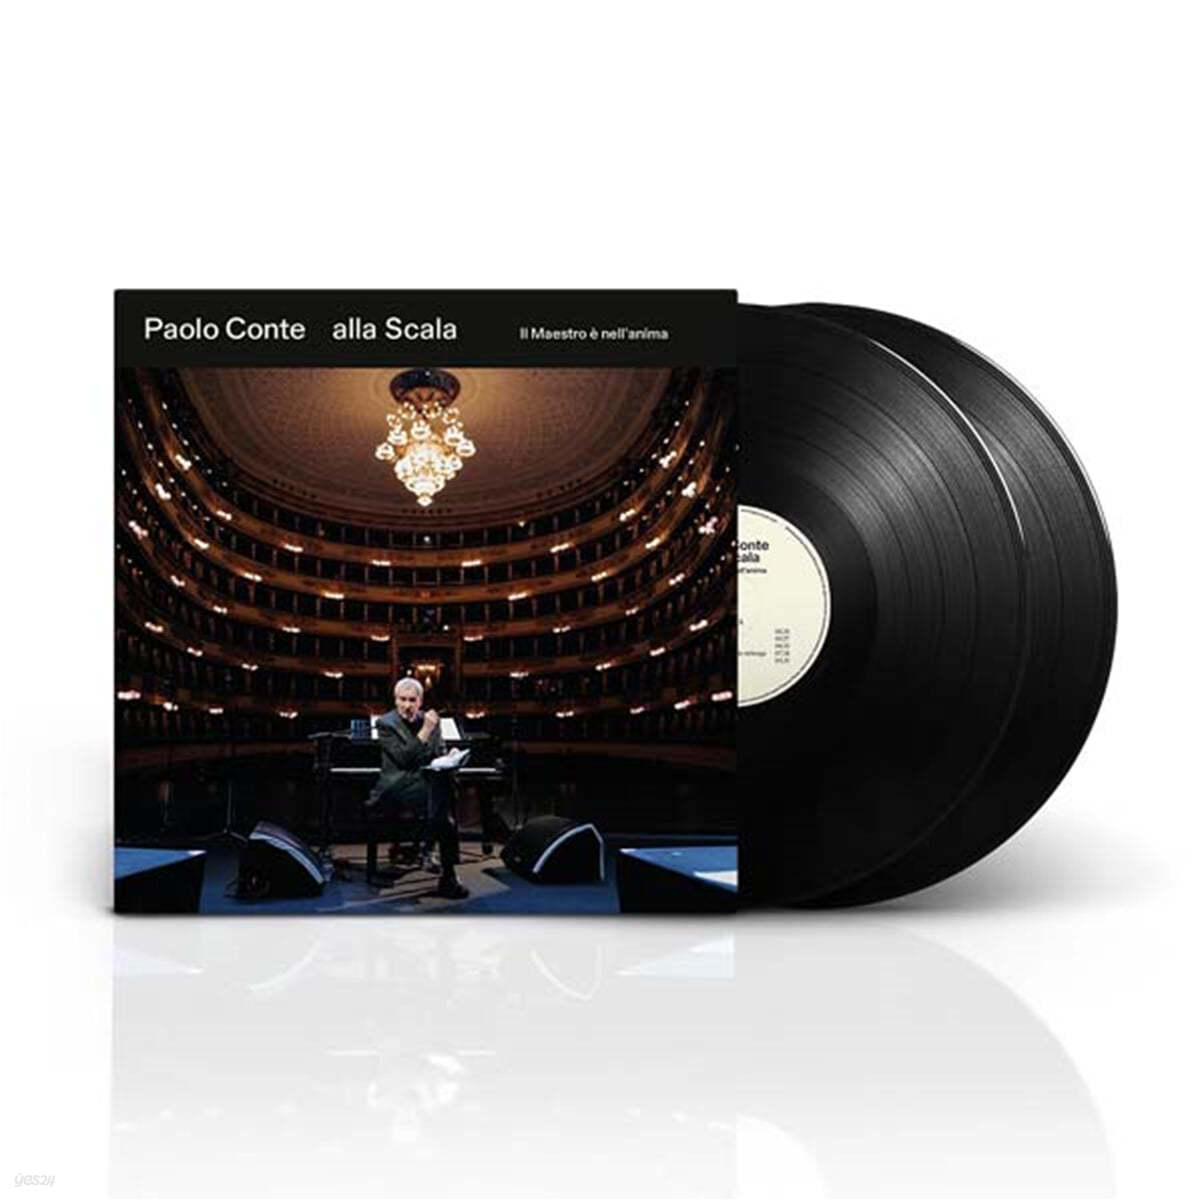 Paolo Conte (파올로 콘테) - alla Scala - Il Maestro E nell' anima [2LP]